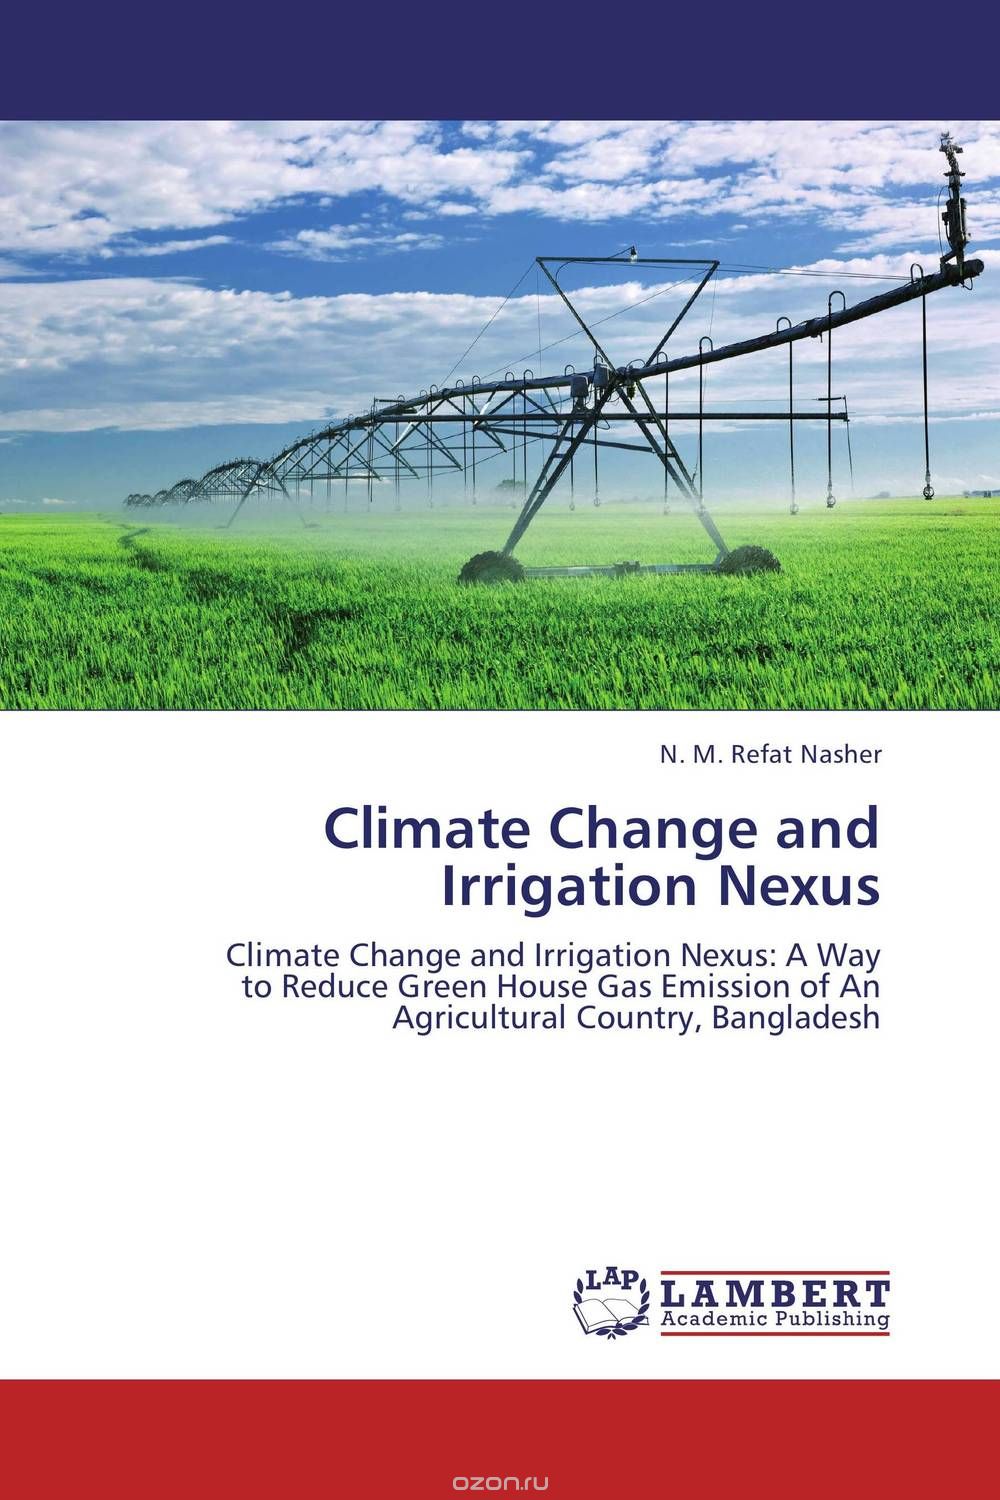 Скачать книгу "Climate Change and Irrigation Nexus"